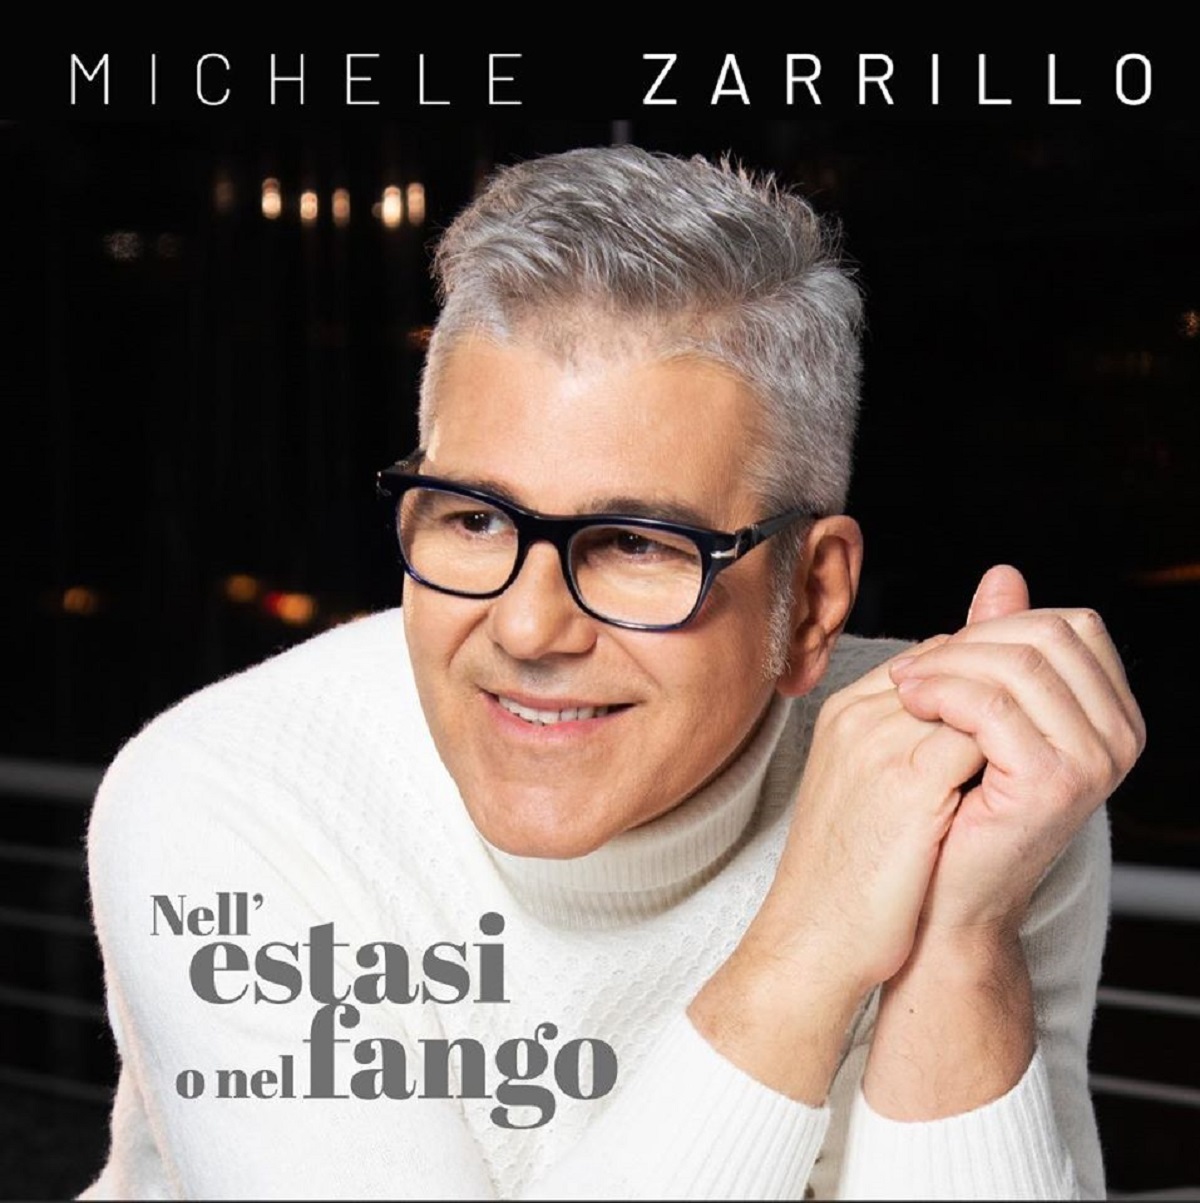 Nell’estasi o nel fango - Michele Zarrillo sanremo 2020